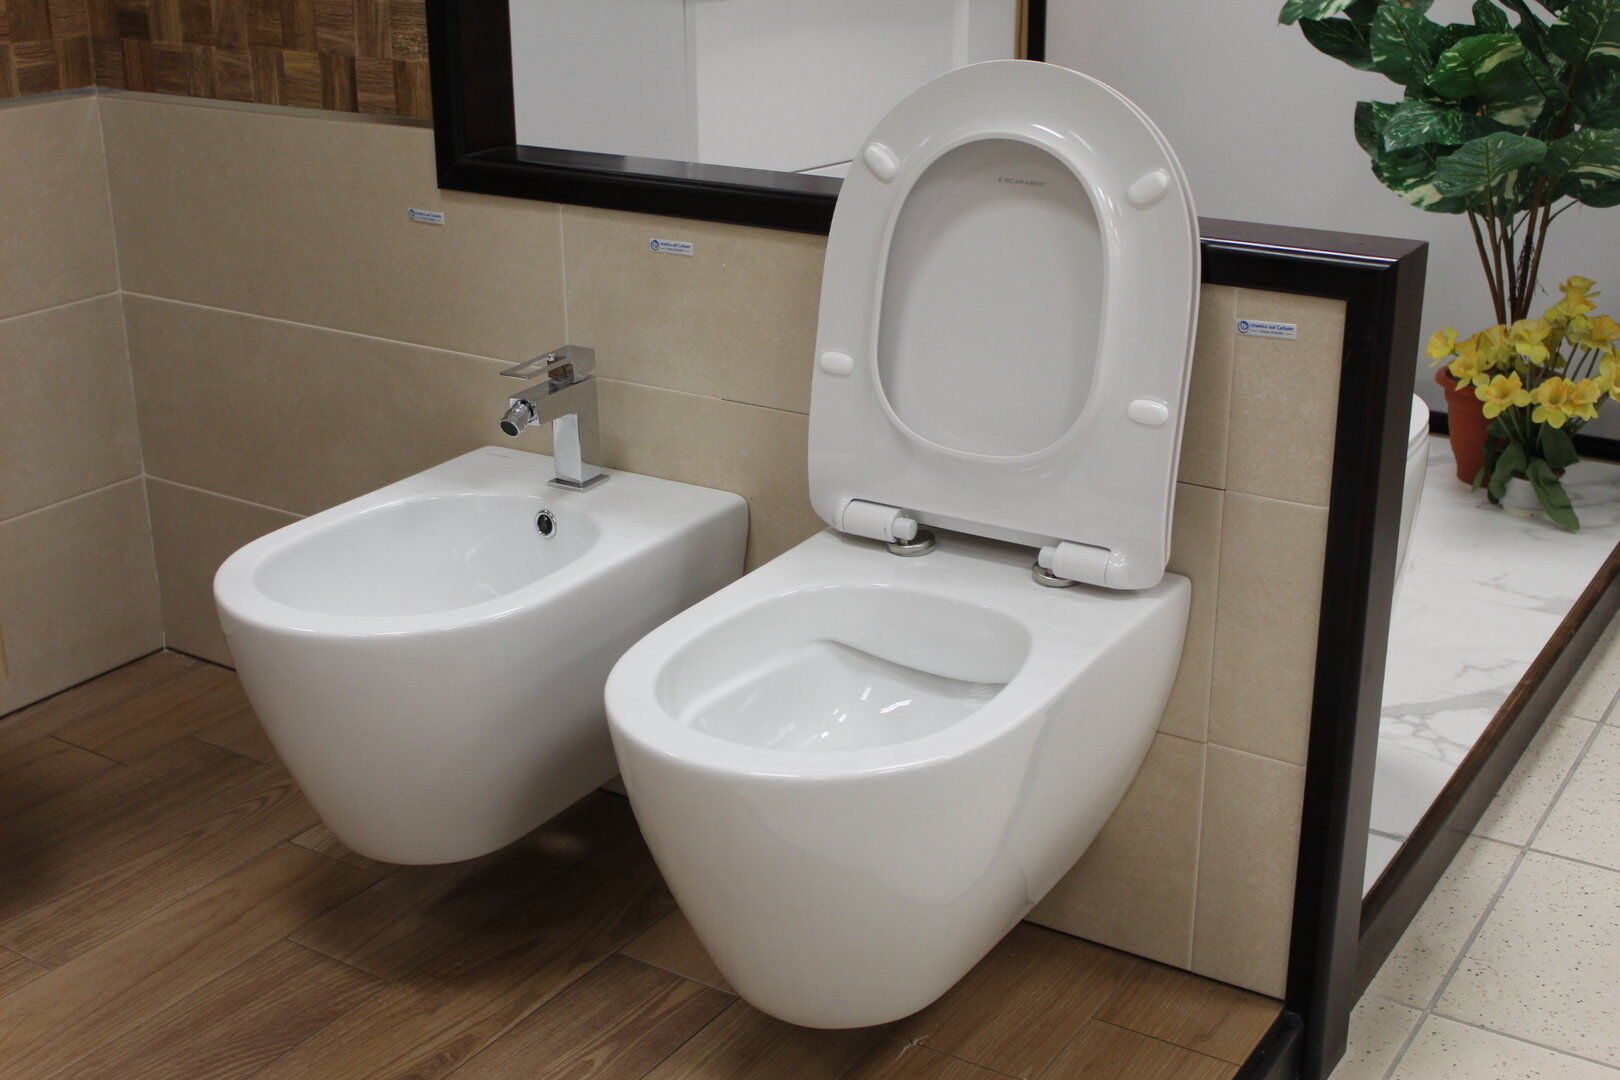 Sanitari bagno mod. ABE wc easy clean + bidet + copri wc .